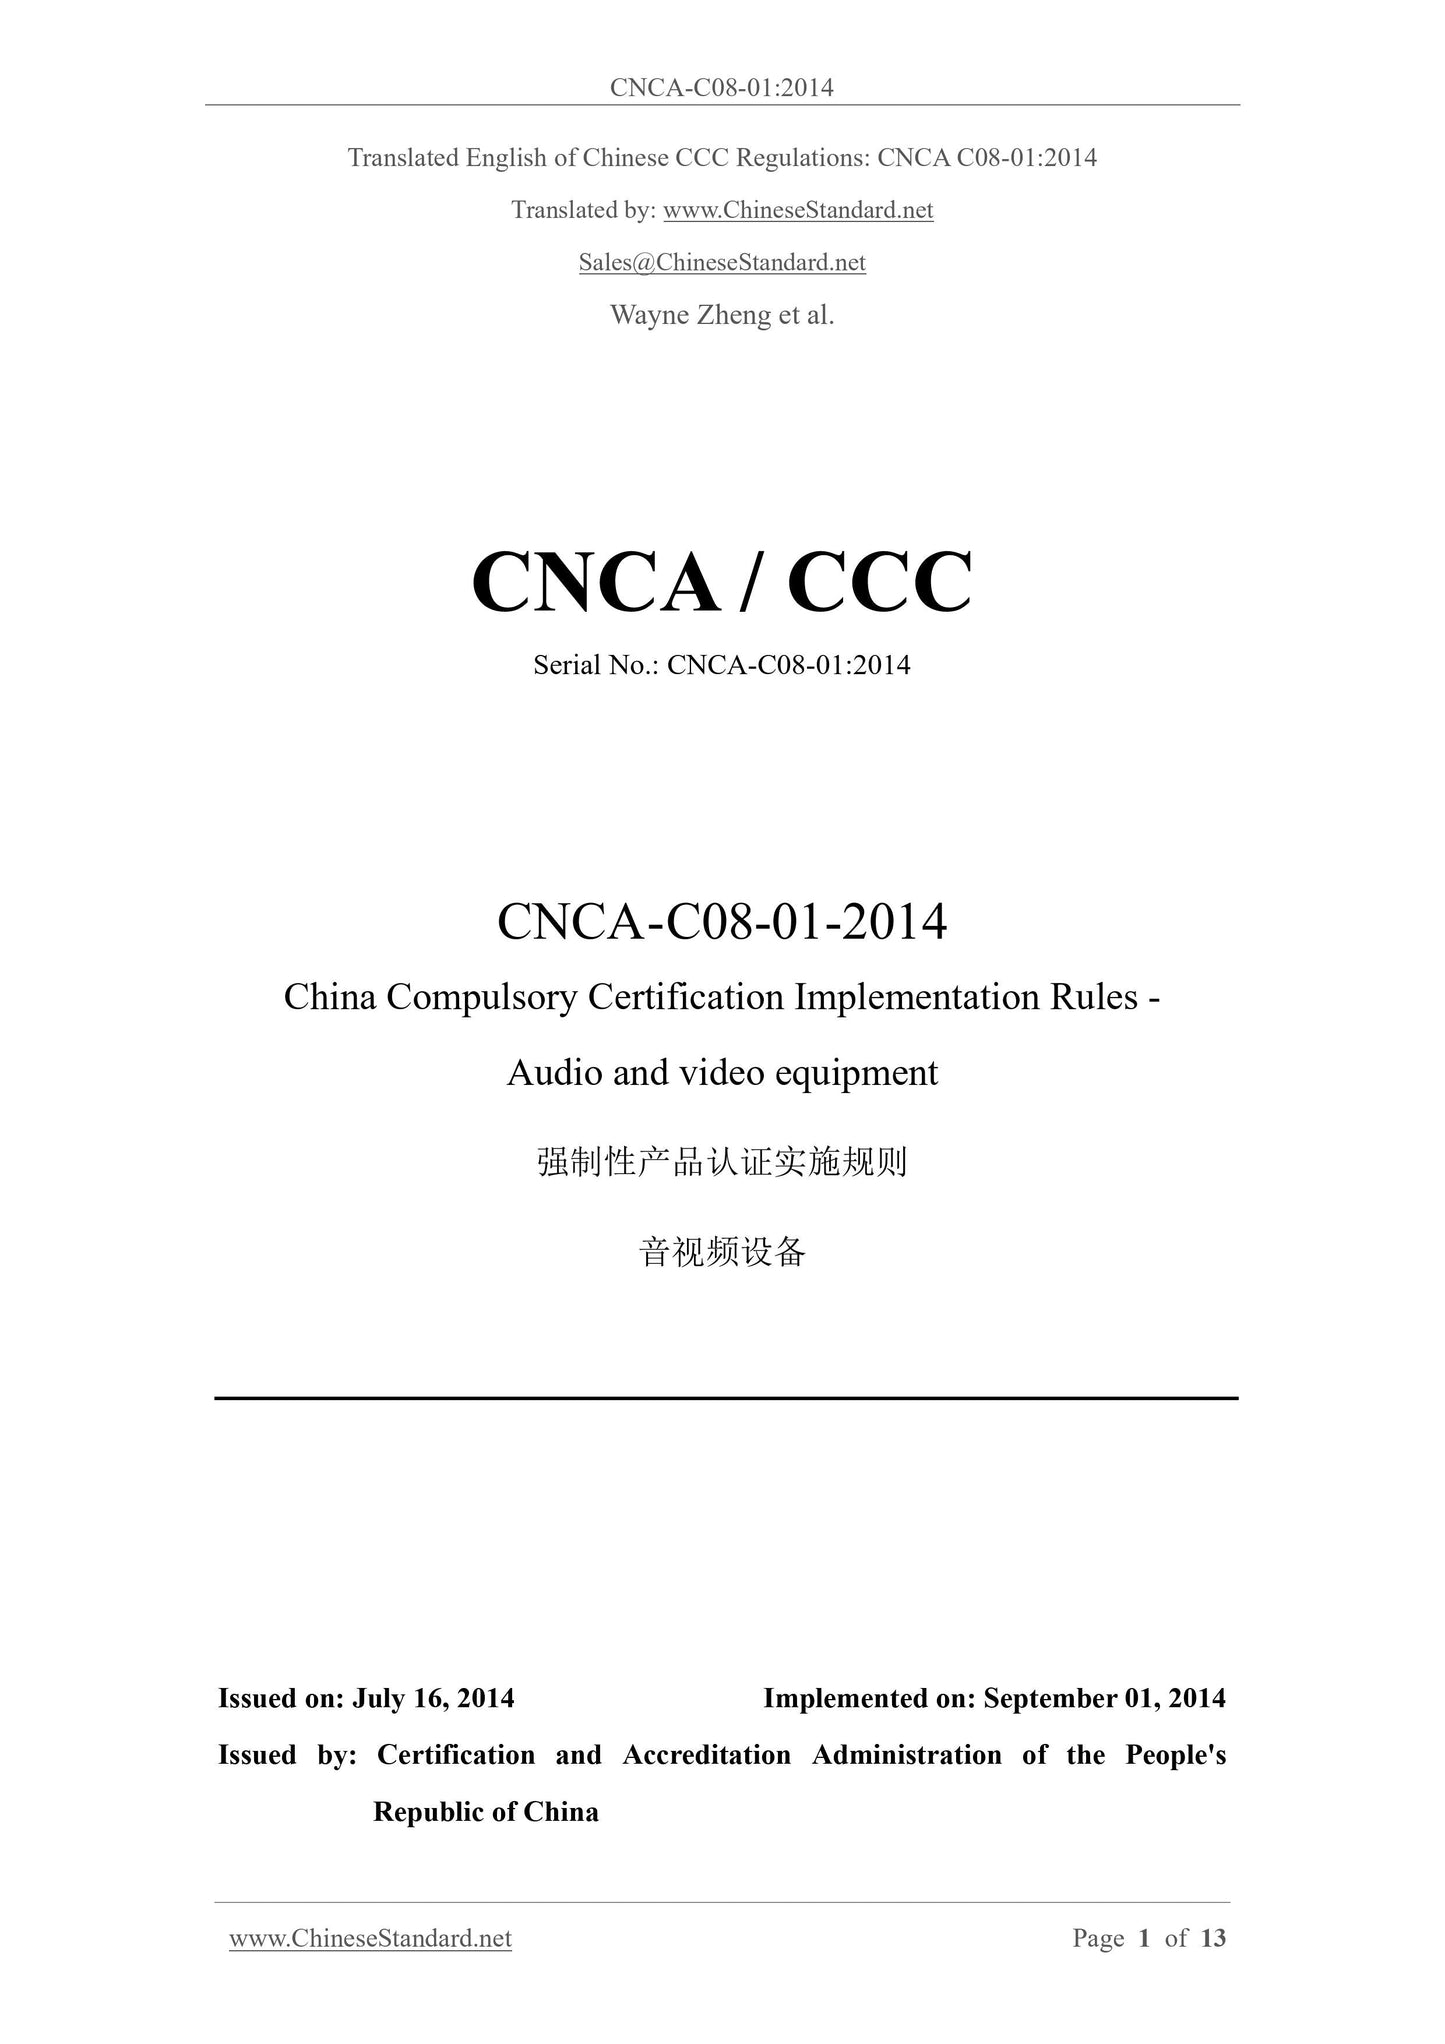 CNCA C08-01-2014 Page 1